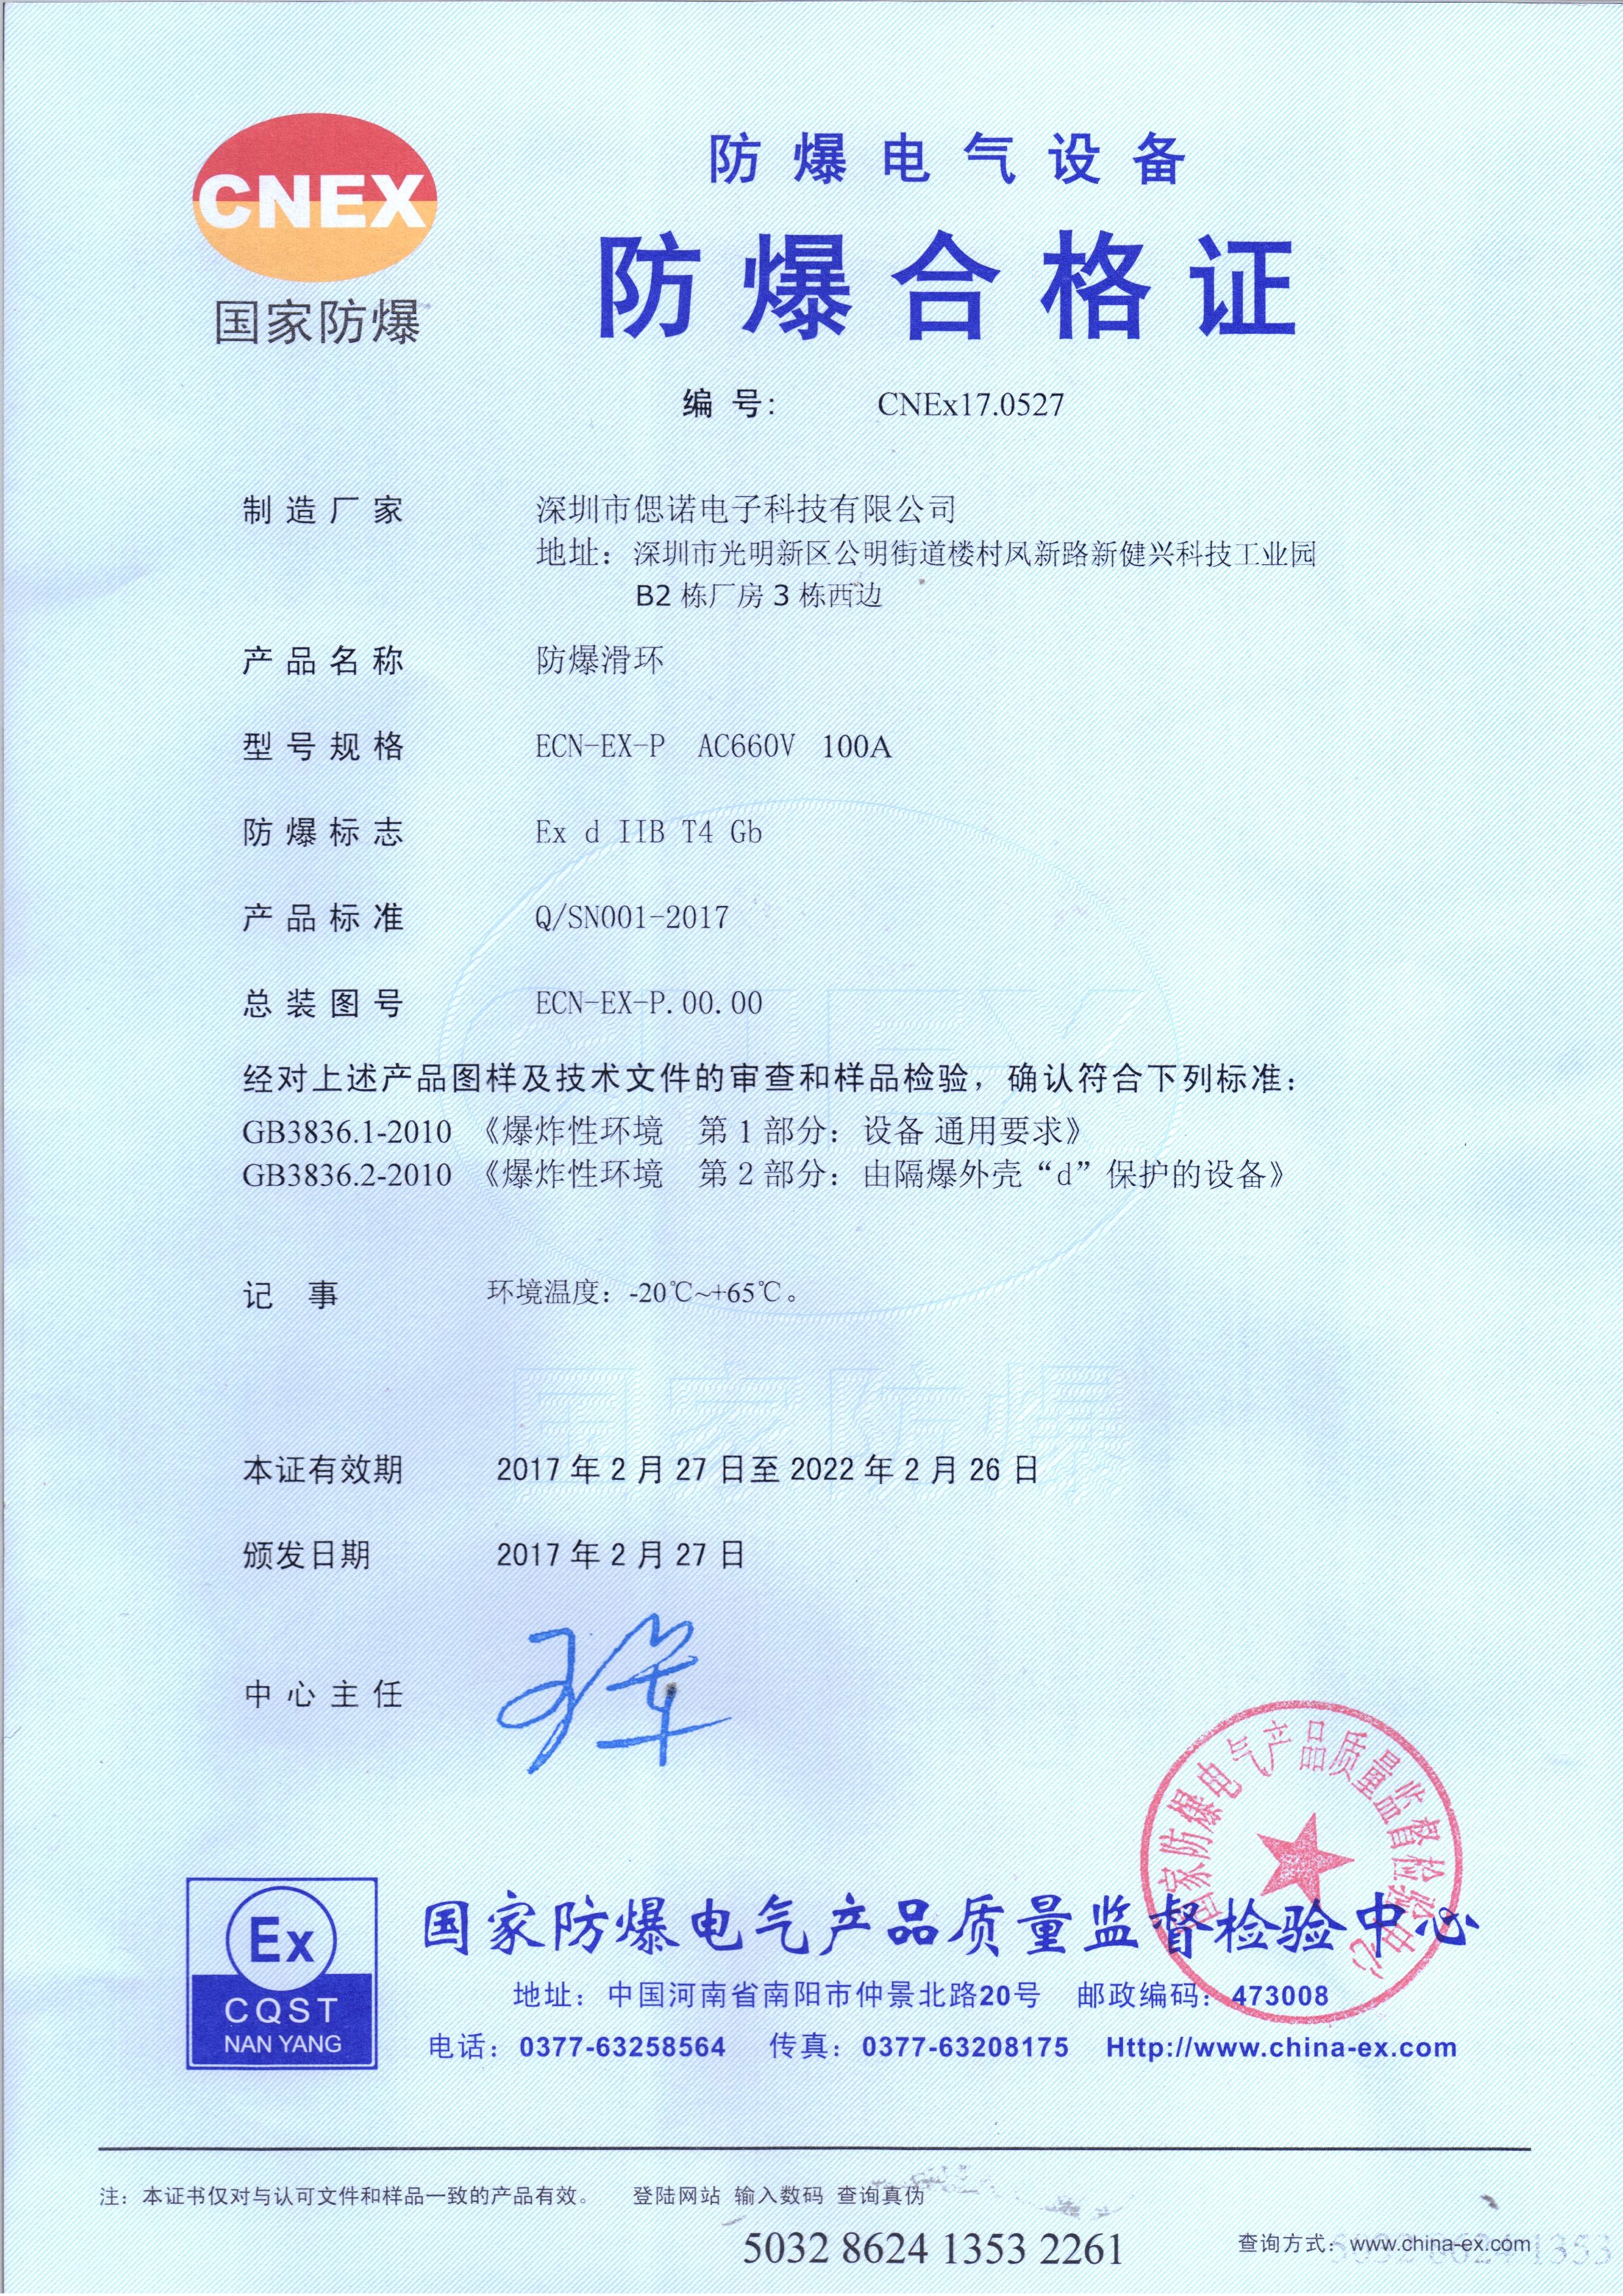 Trung Quốc CENO Electronics Technology Co.,Ltd Chứng chỉ